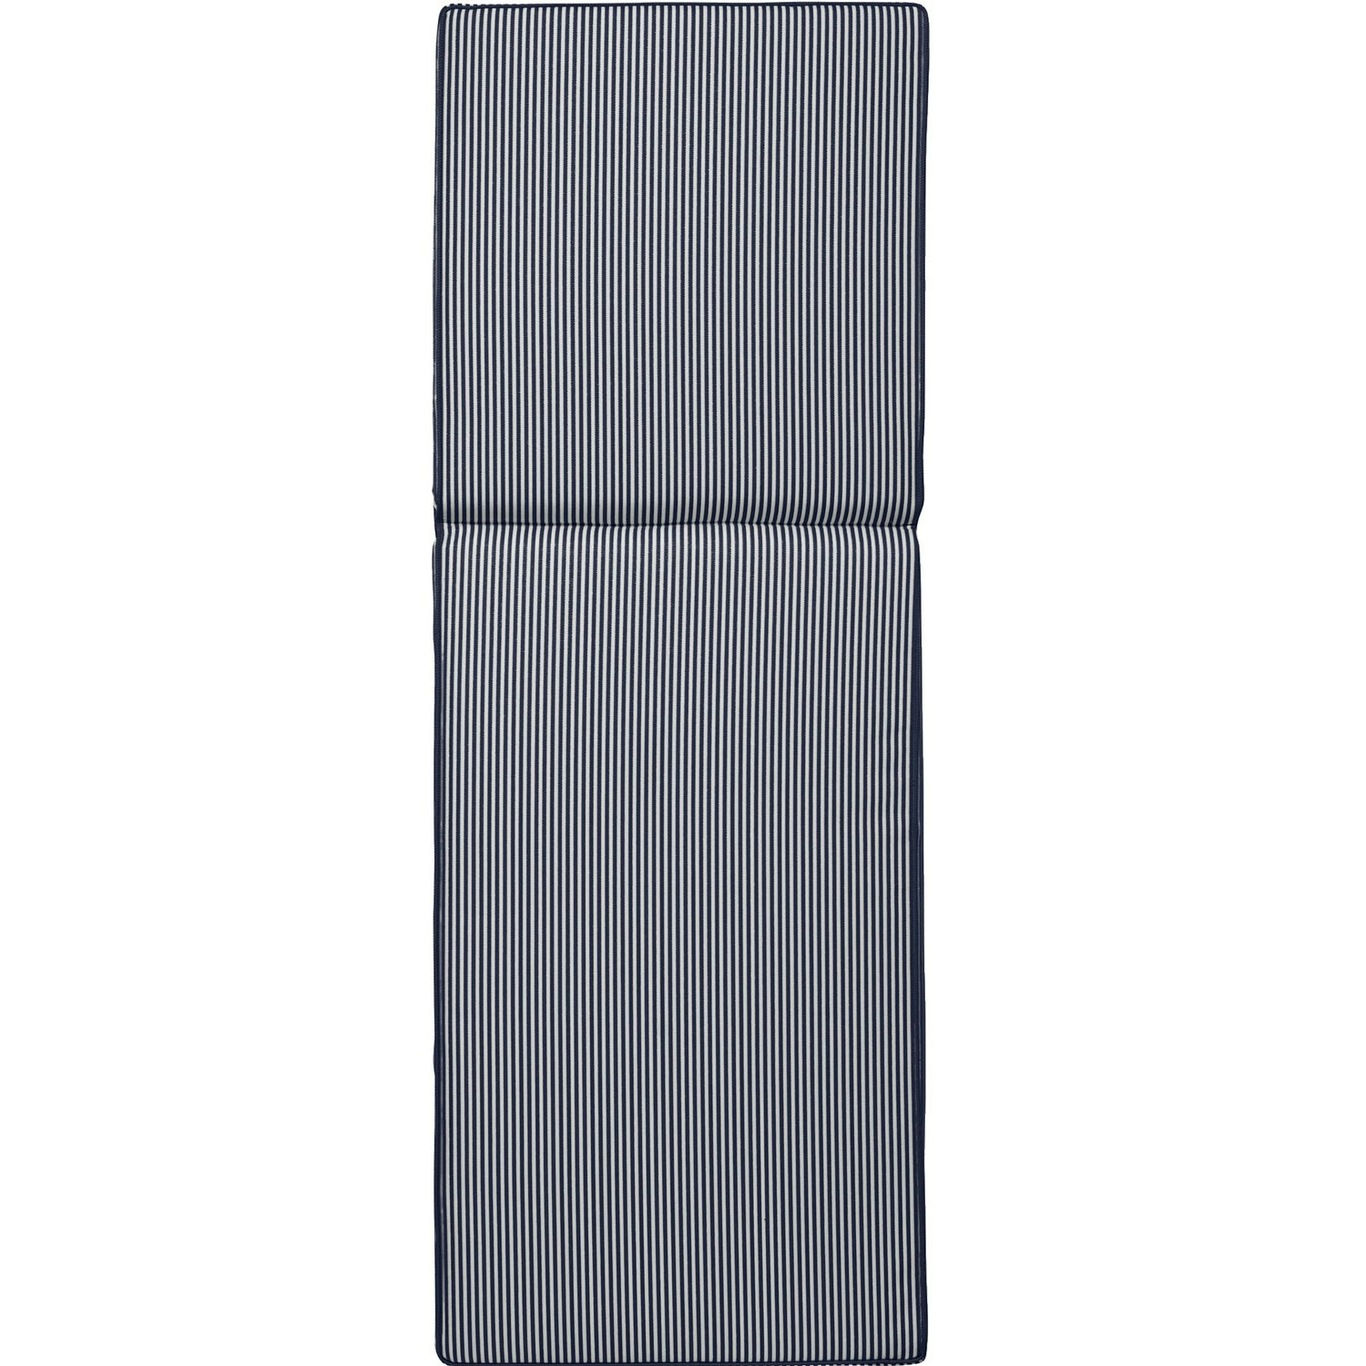 Narrow Stripe Sonnenbankkissen 60x186 cm, Marineblau